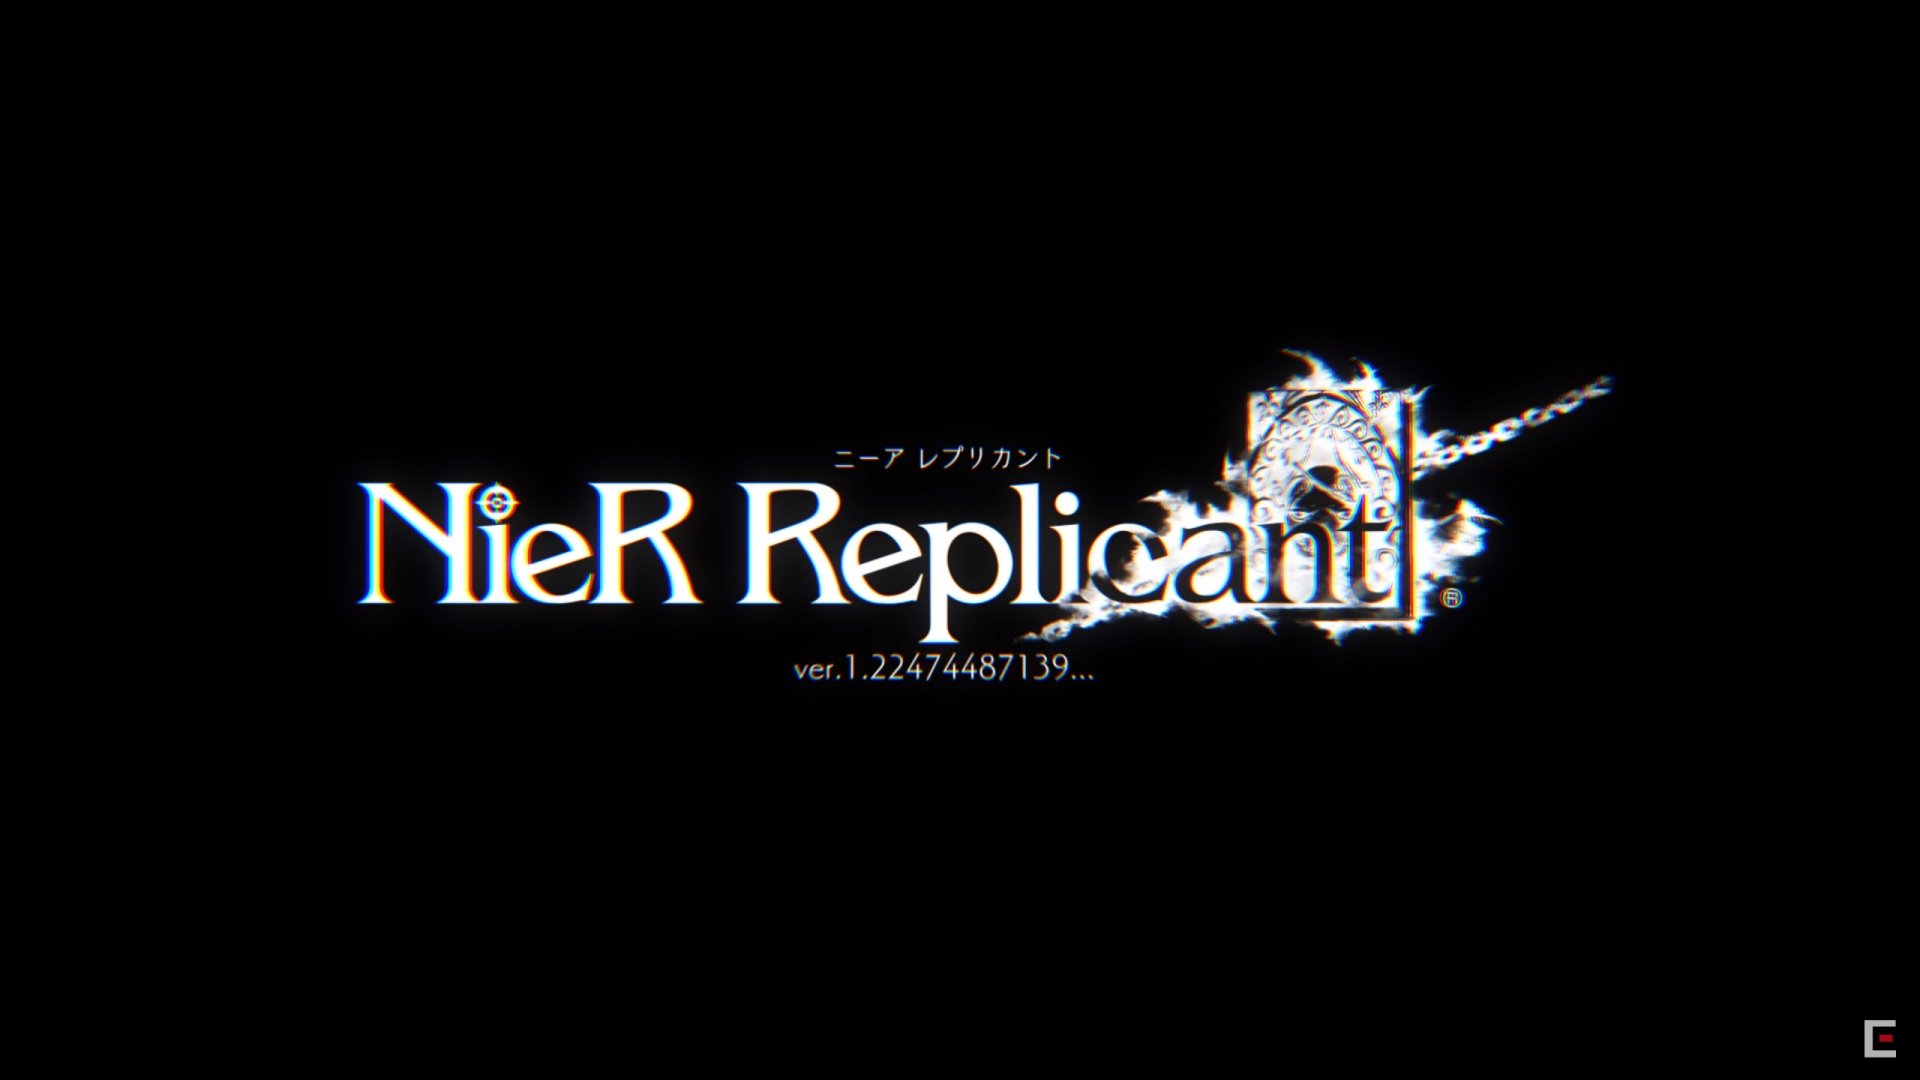 يأتي NieR Replicant Remaster إلى جهاز الكمبيوتر عبر Steam 8